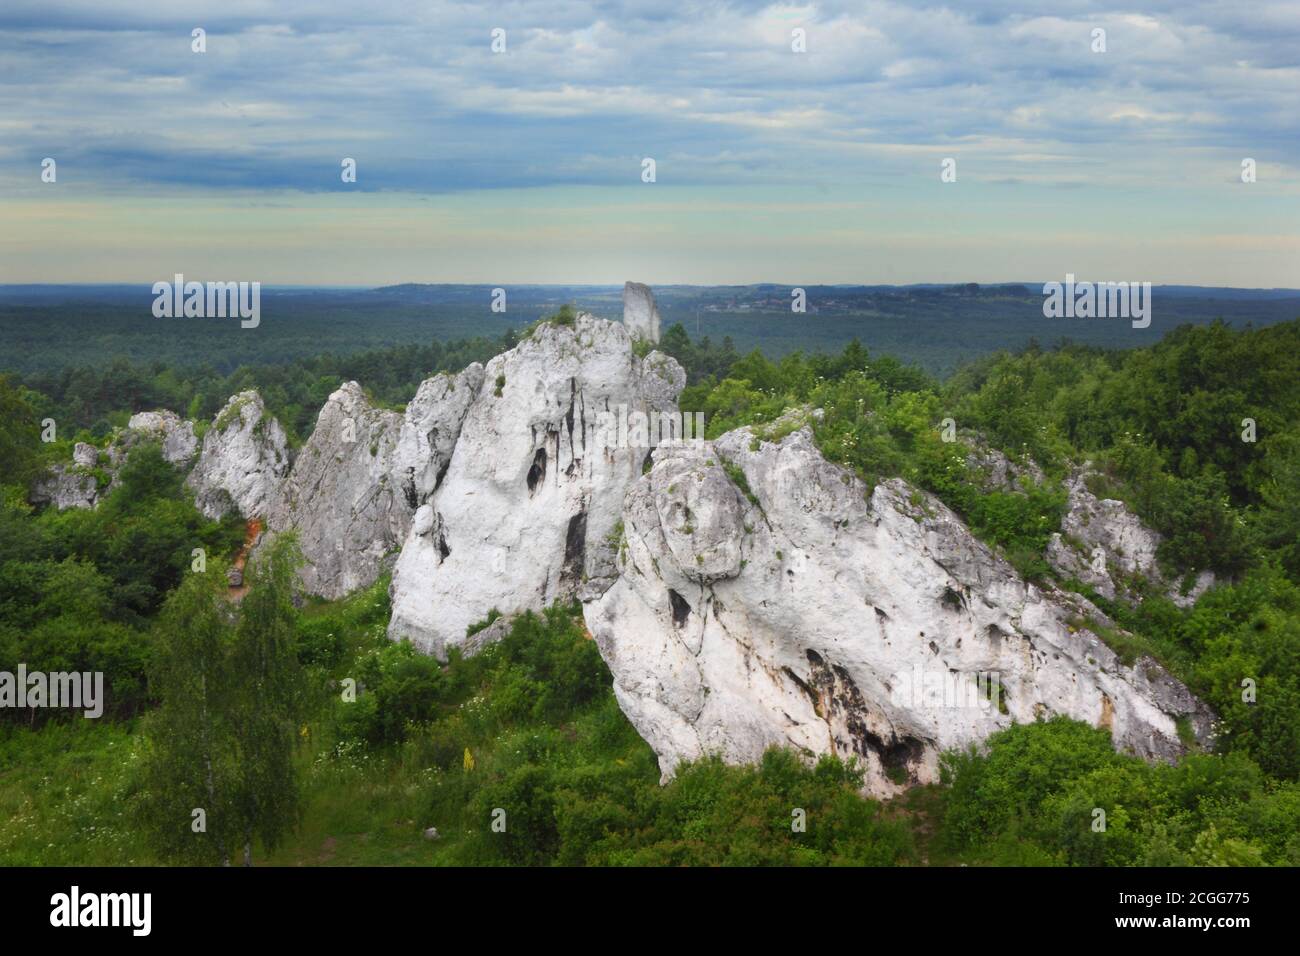 Famous rock climbing rocks in Rzedkowice, Jura Krakowsko-Czestochowska Upland, Poland Stock Photo